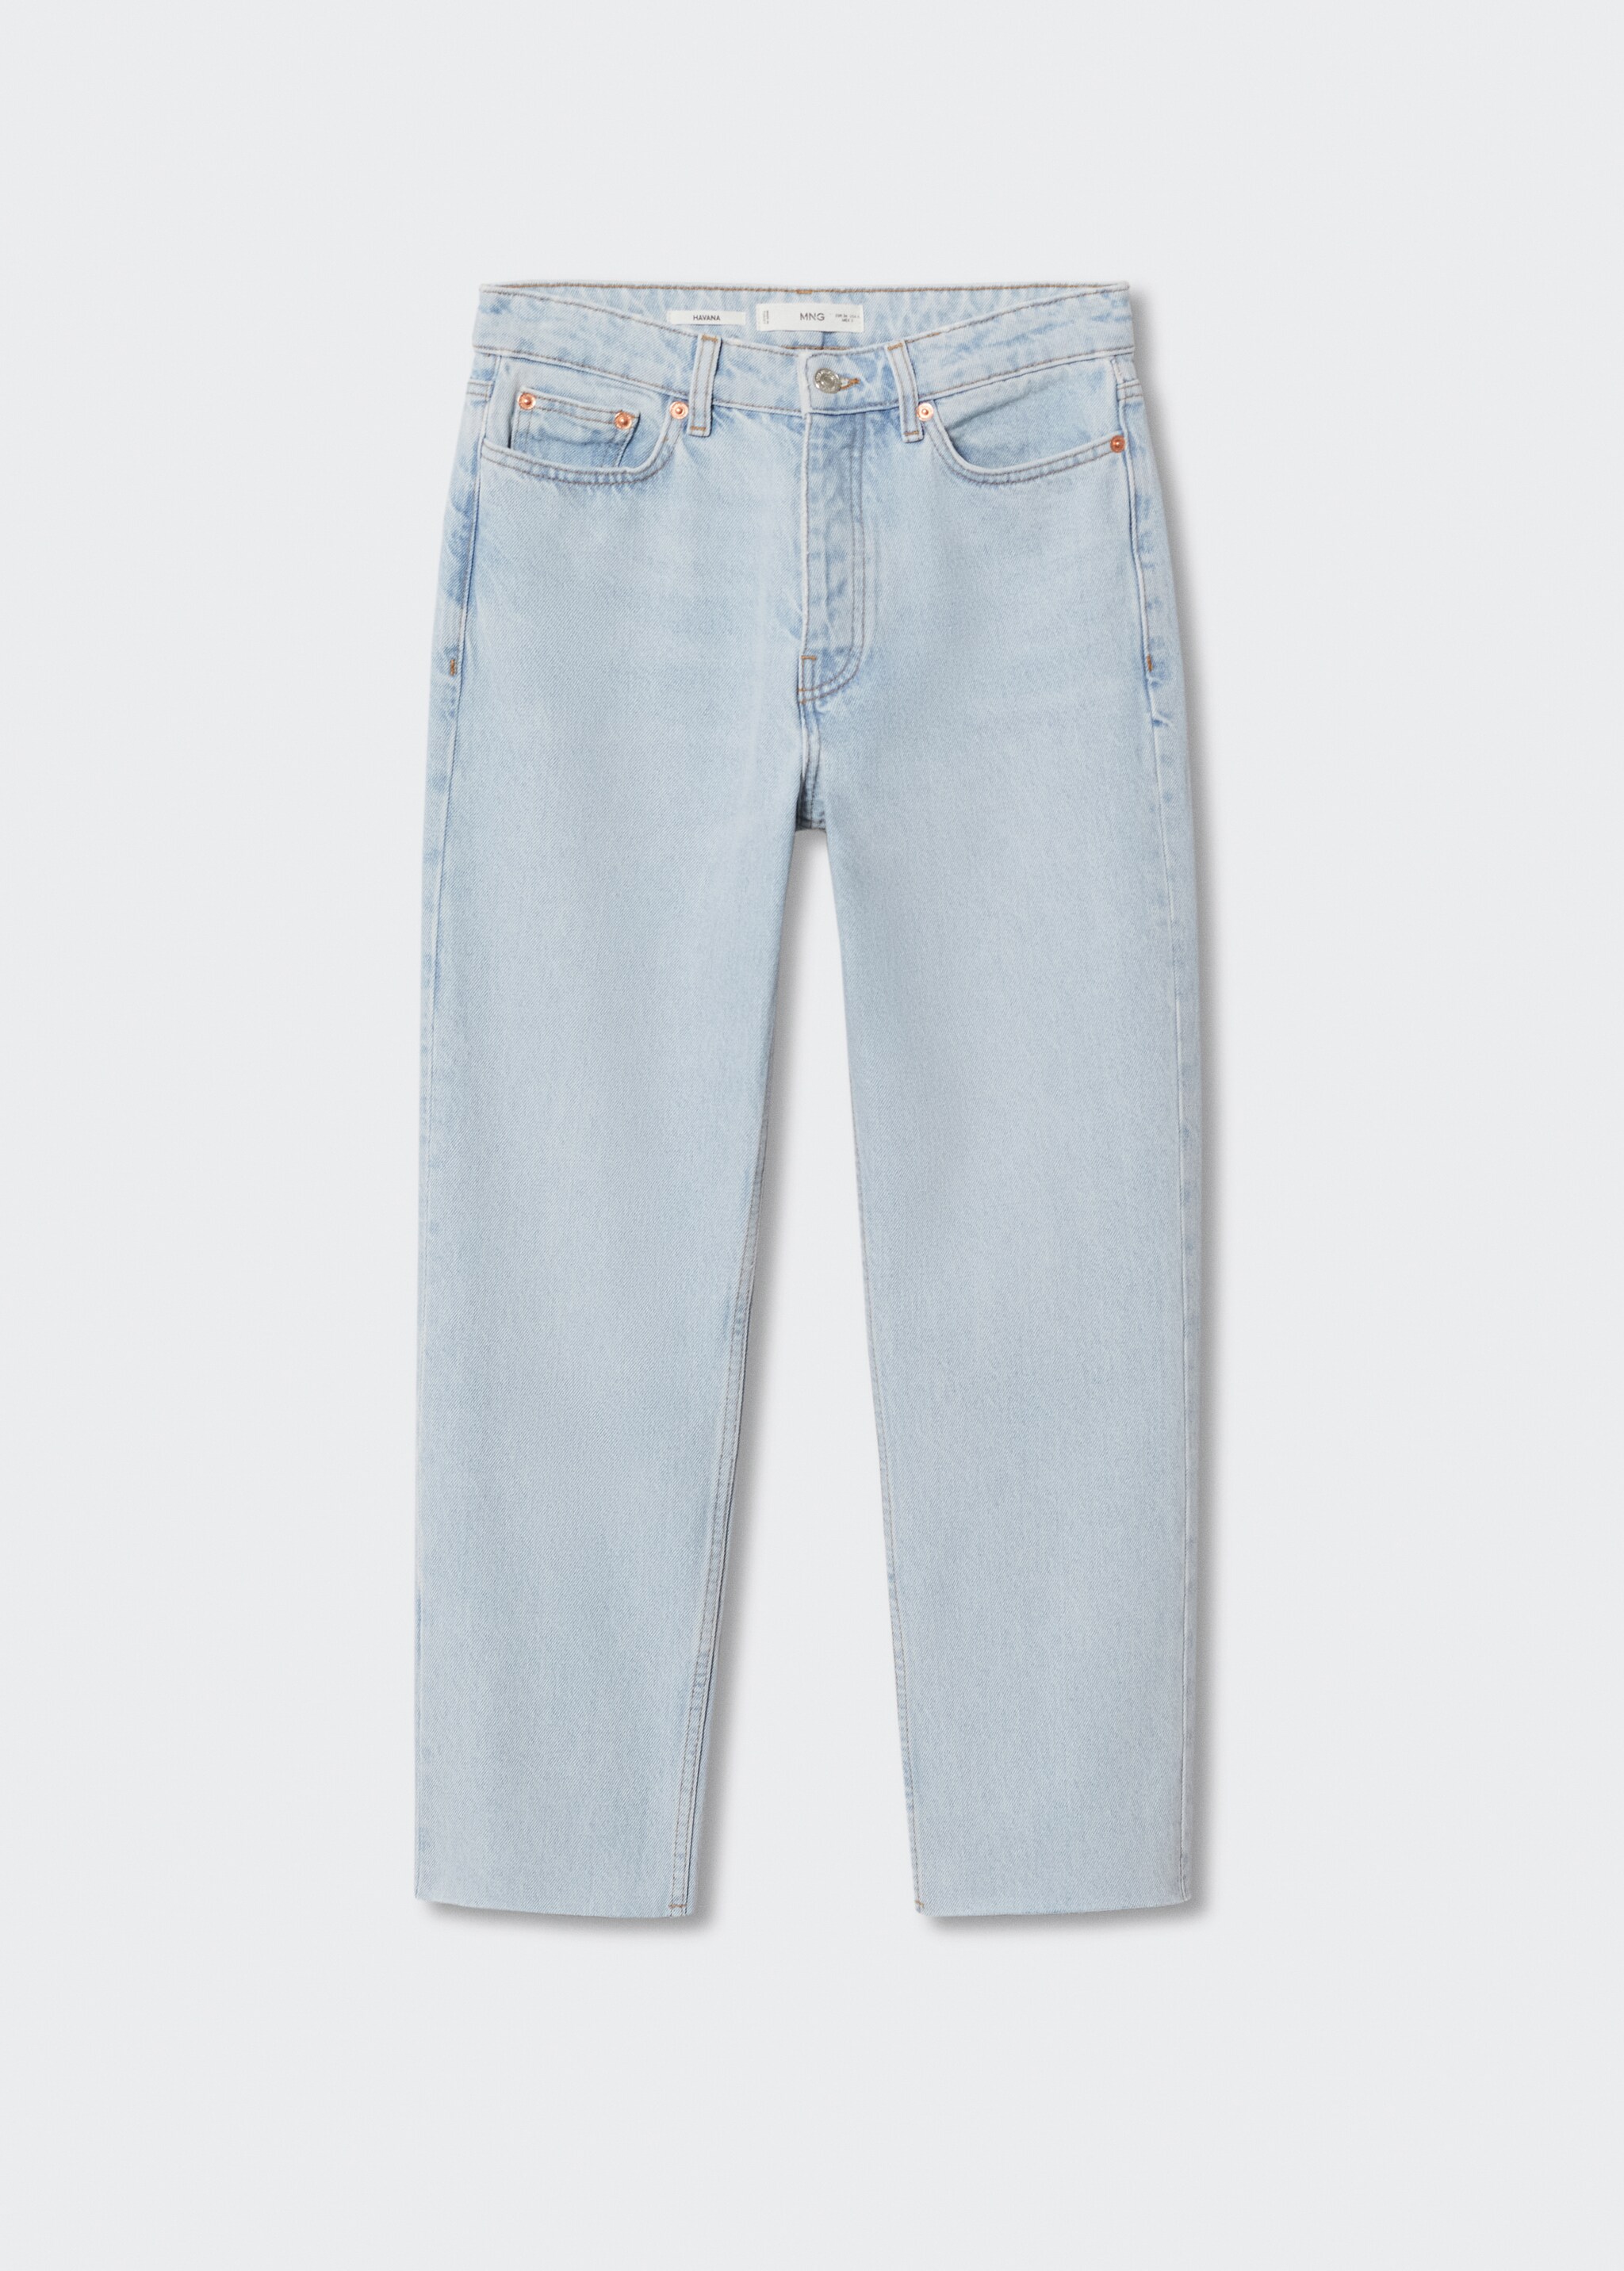 Jeans rectos tiro alto crop - Artículo sin modelo